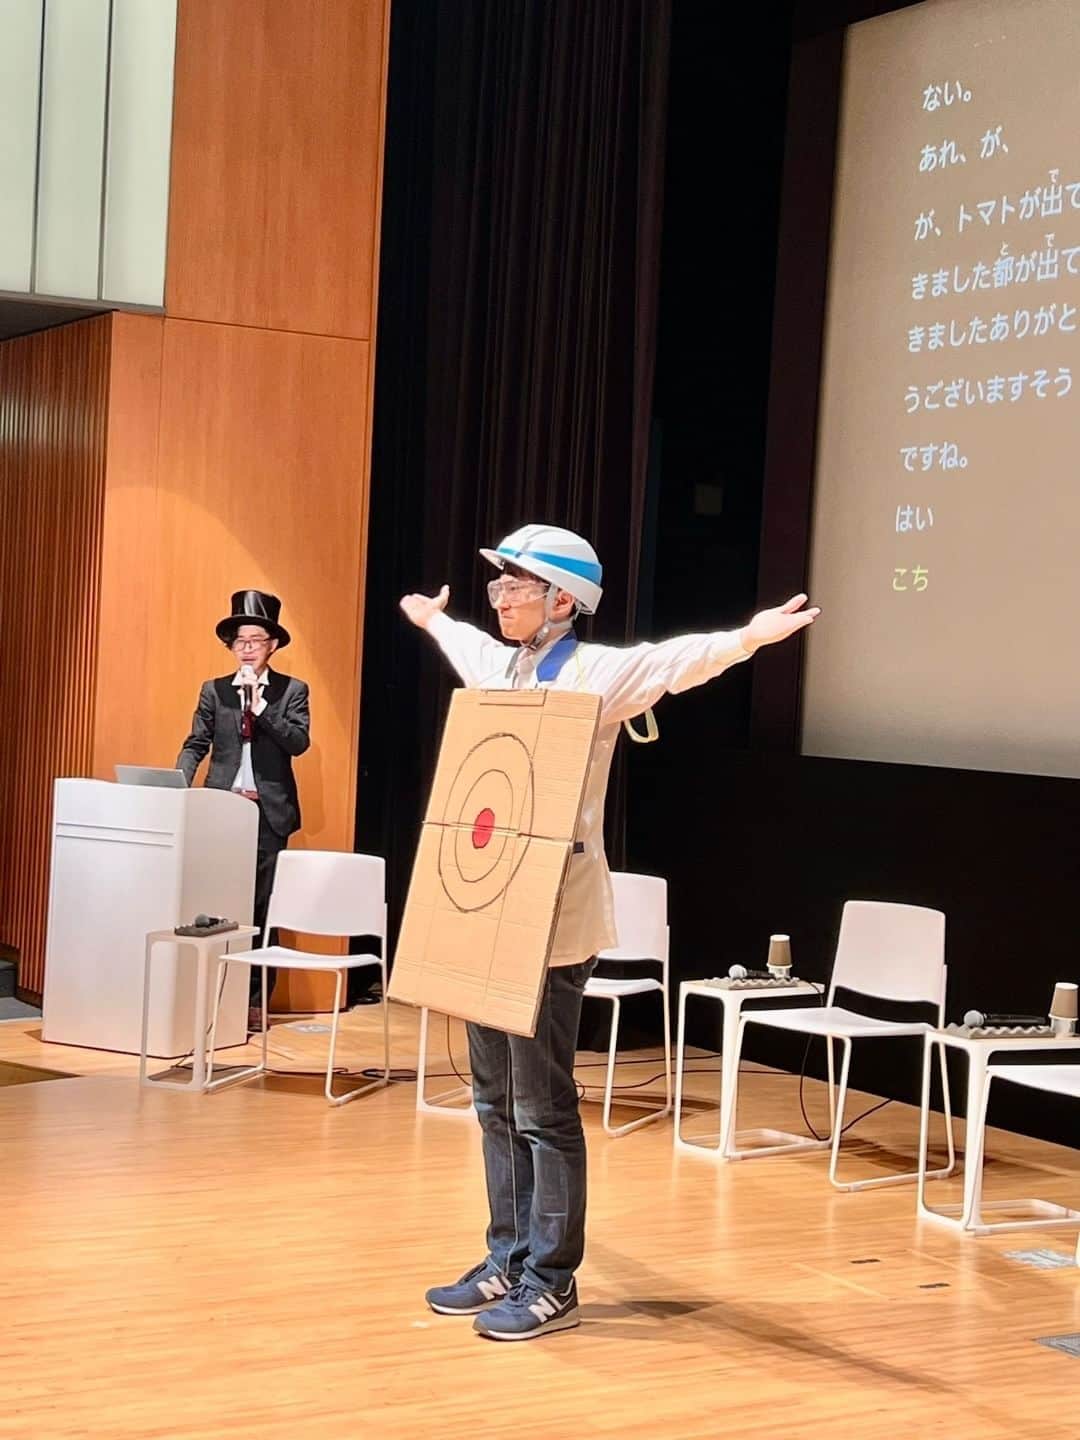 Miraikan, 日本科学未来館のインスタグラム：「【終始笑いが絶えない楽しいイベントでした！】 イグ・ノーベル賞公式イベント「Ig Nobel Face-to-Face 2023 in JAPAN」を12/17(土)に実施🎩  個性あふれる研究内容はもちろんですが、子どもの頃のお話や研究での失敗談などのお話もあり、研究者のみなさんの意外な一面も見ることができたような気がします。  研究者が語る知的好奇心の大切さのお話には会場全体が真剣に聞き入っていました。  今回はダイジェストでのご紹介ですが、アーカイブ映像もお楽しみに…！  #miraikan #未来館 #日本科学未来館 #科学館 #東京テレポート #お台場 #ミュージアム #博物館巡り #博物館 #お出かけスポット #東京おでかけ #ノーベル賞 #イグノーベル賞 #イベント #sciencemuseum #museum #tokyo #odaiba #odaibatokyo #traveljapan #japantrip #japantravel #japantravelphoto #nobel #ignobel」